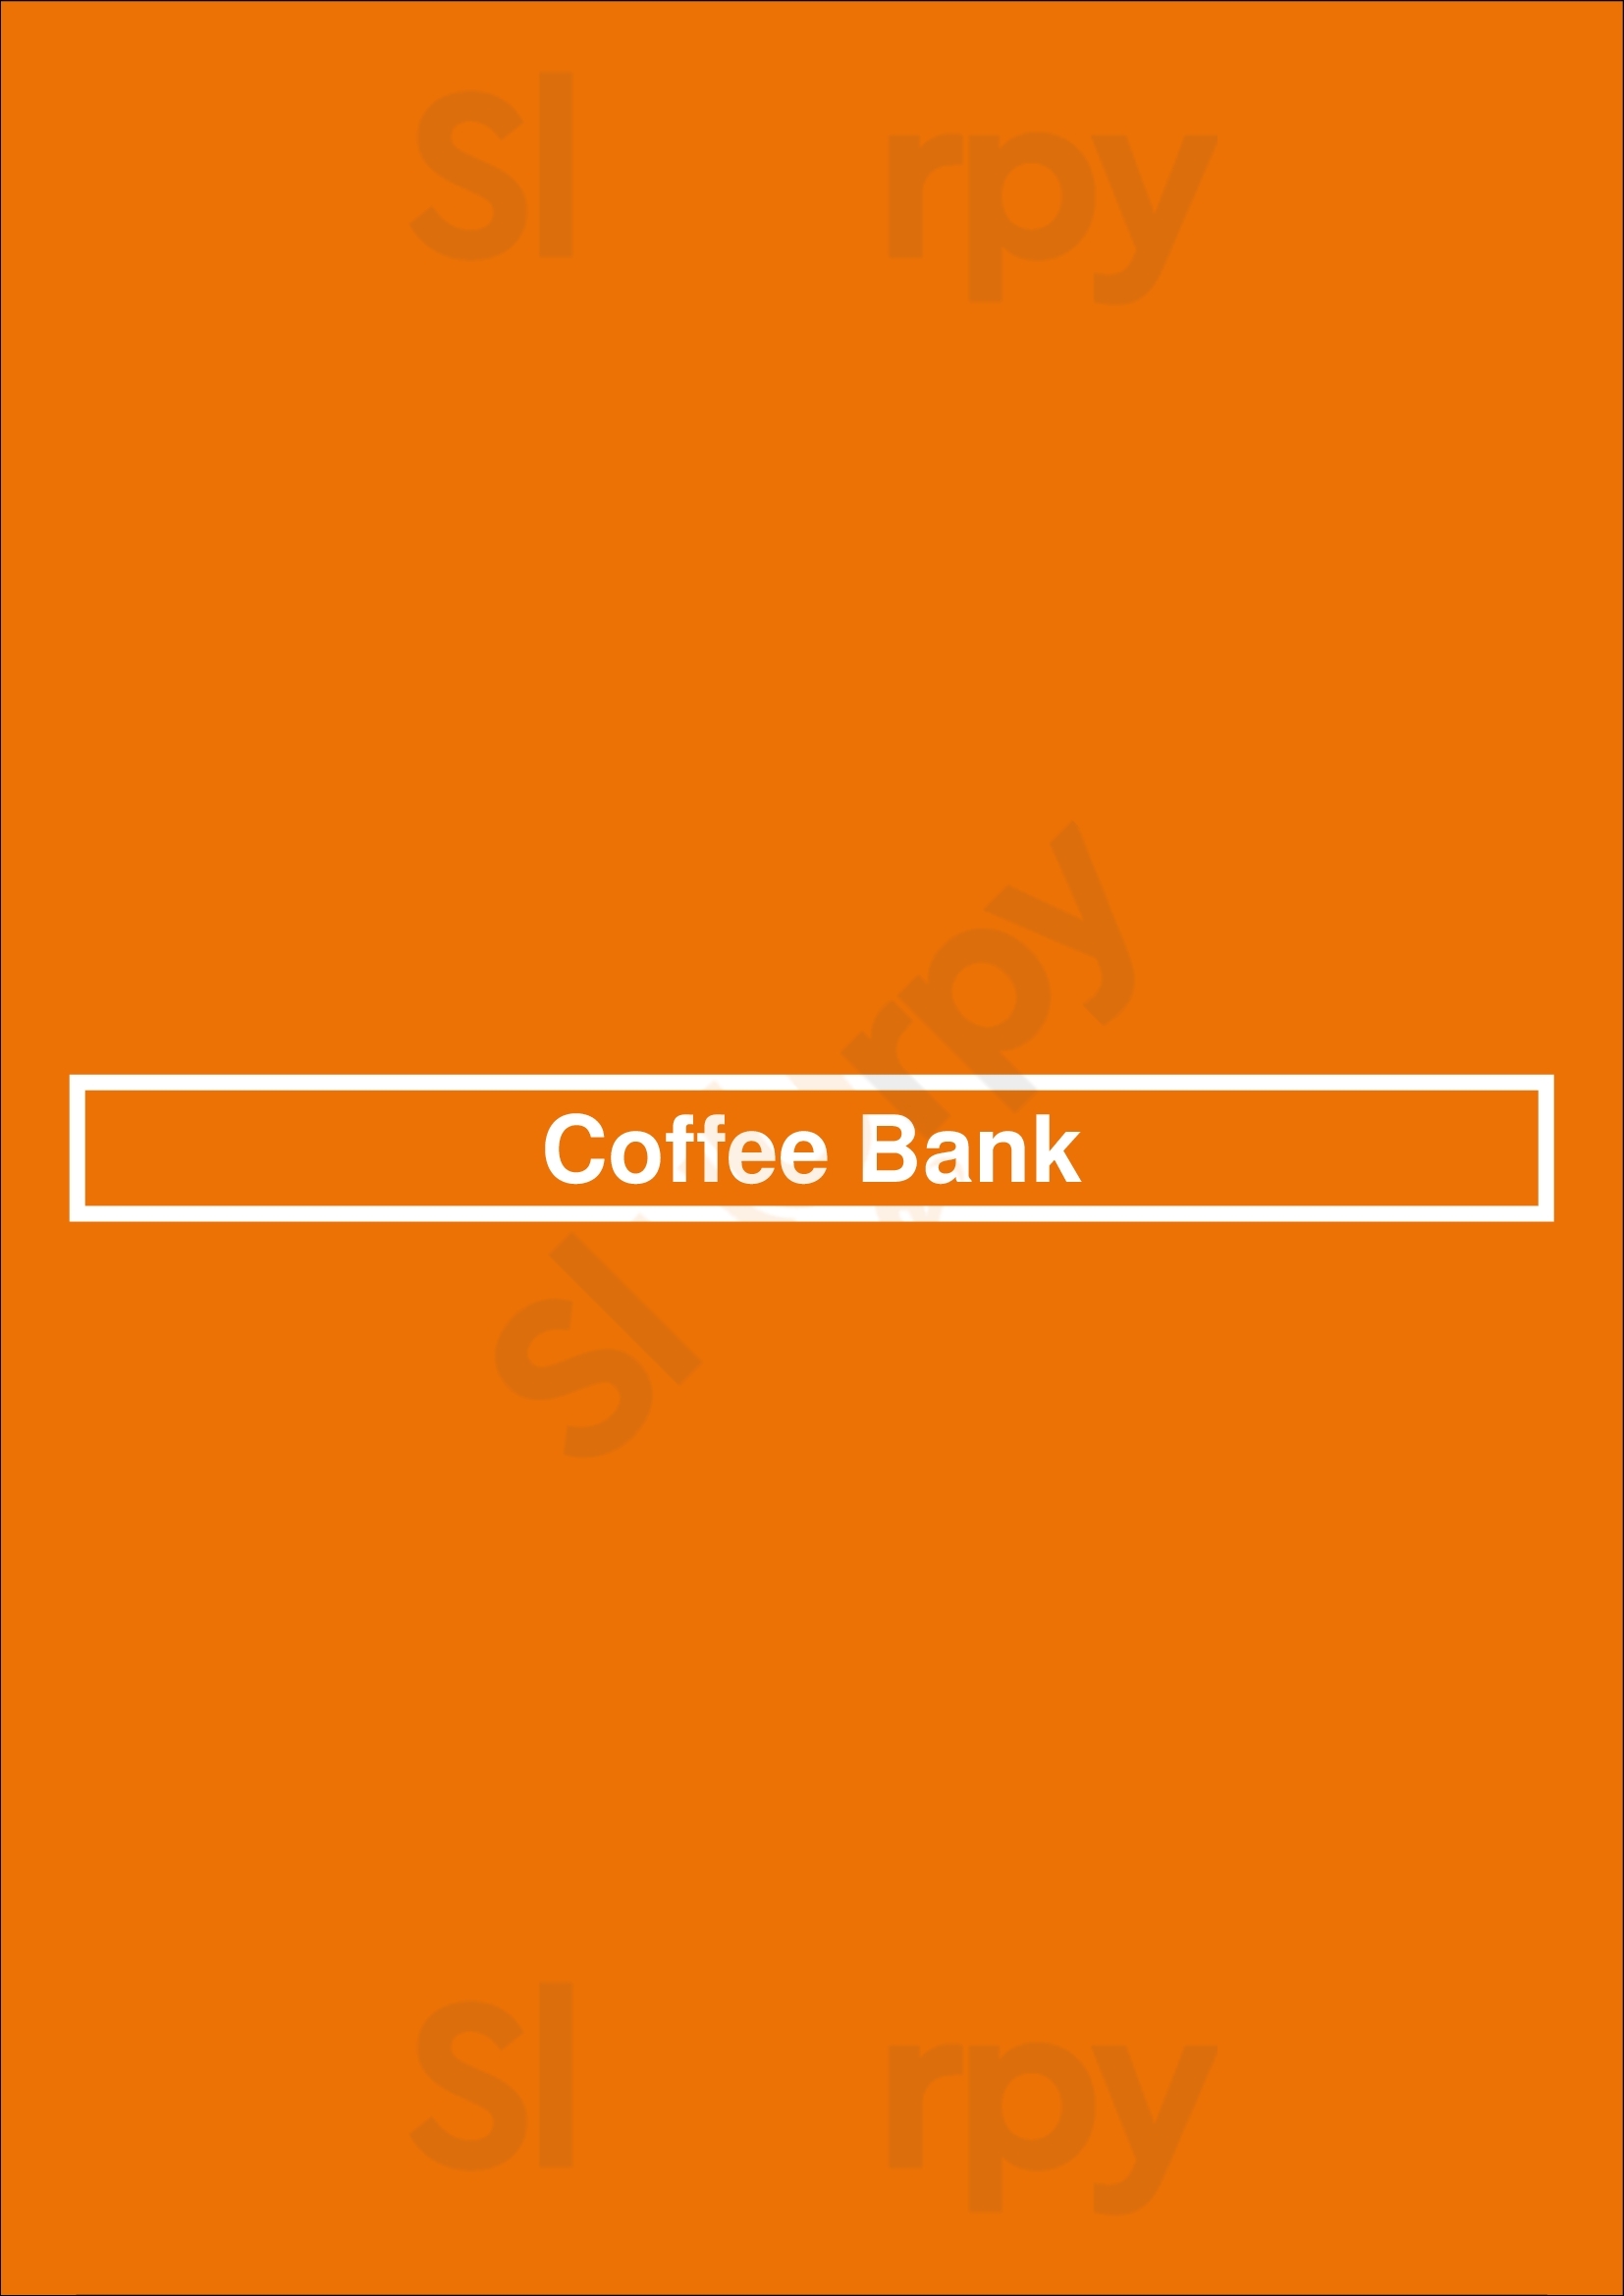 Coffee Bank London Menu - 1